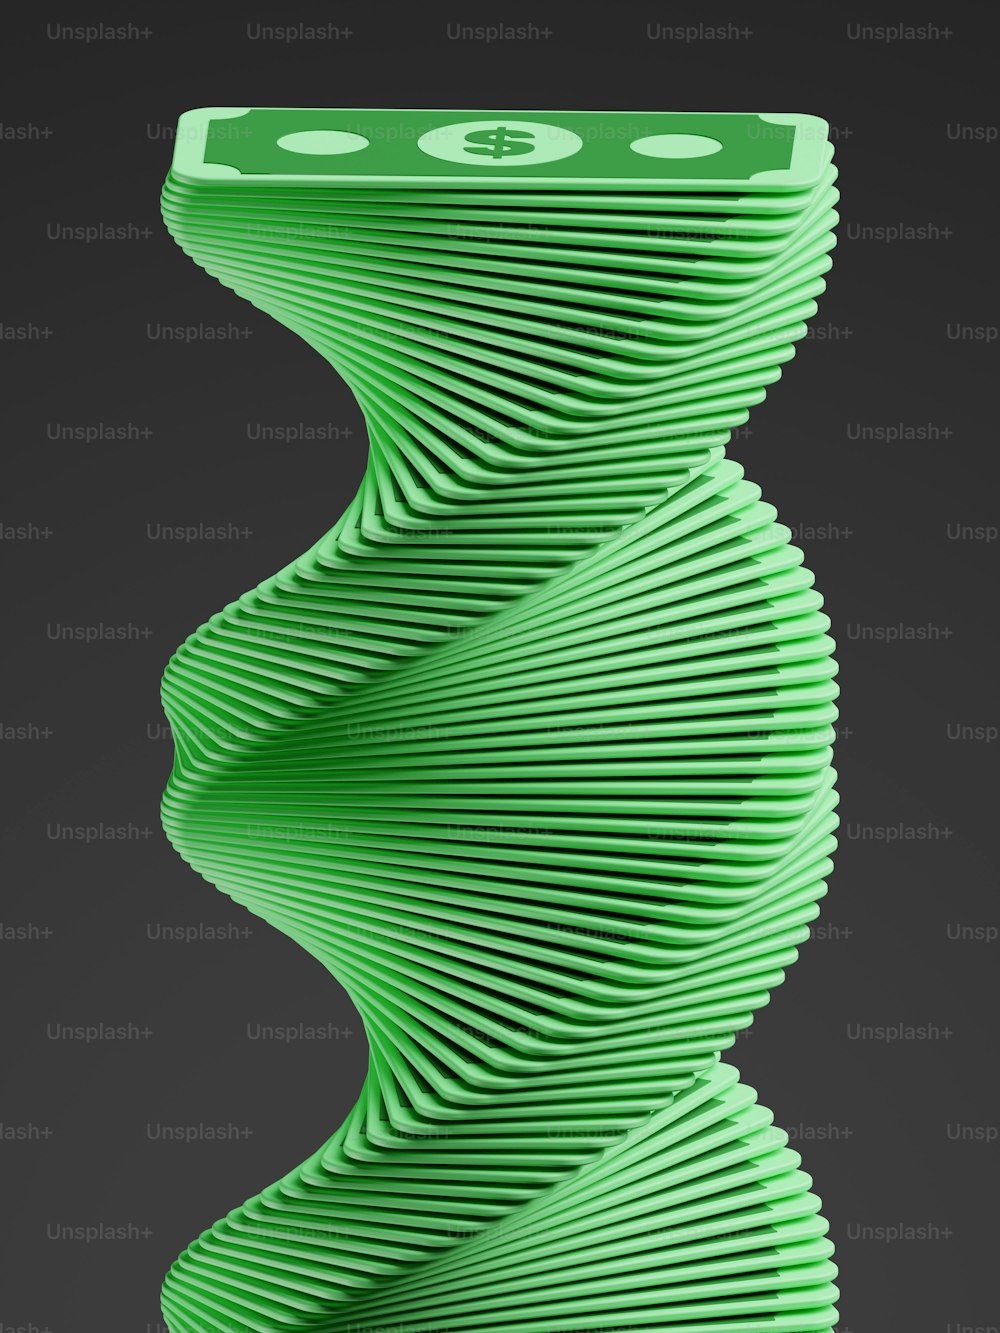 Un objeto verde que parece una espiral